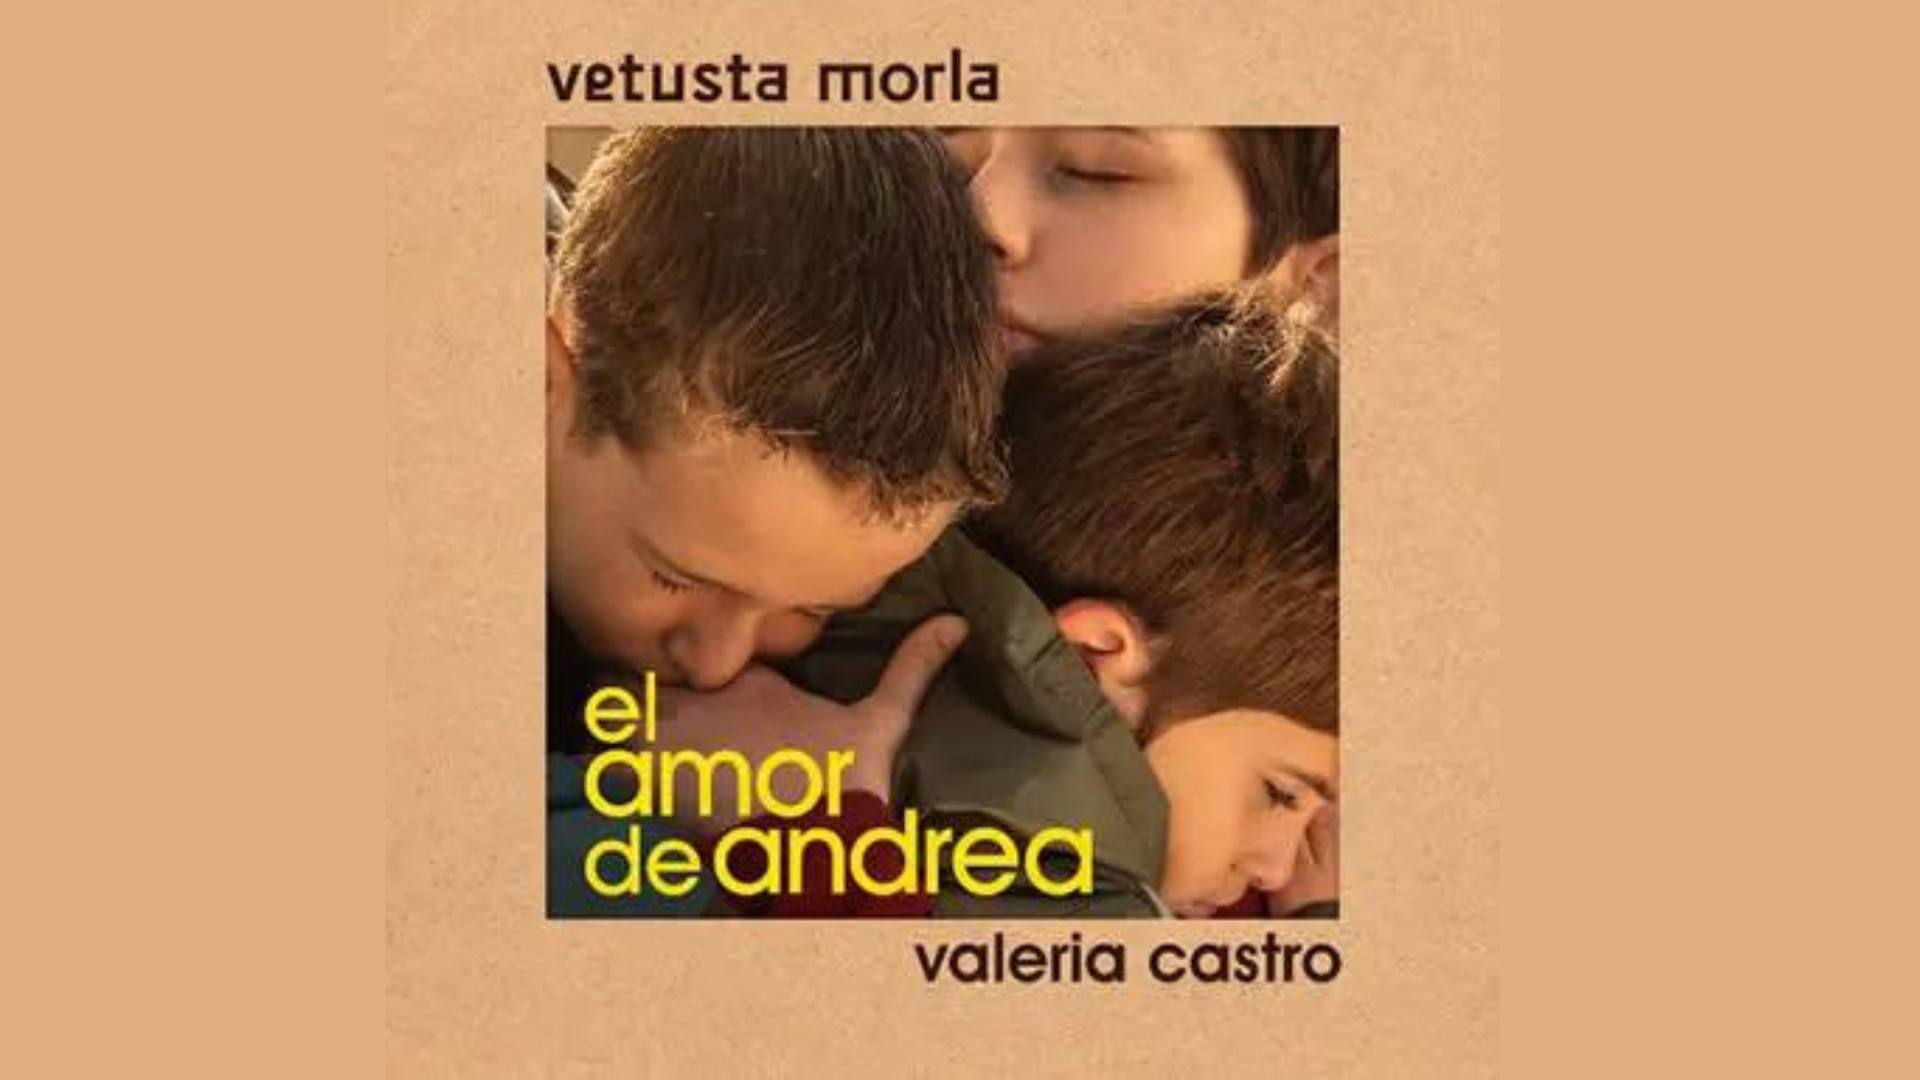 La nueva canción de Vetusta Morla junto a Valeria Castro